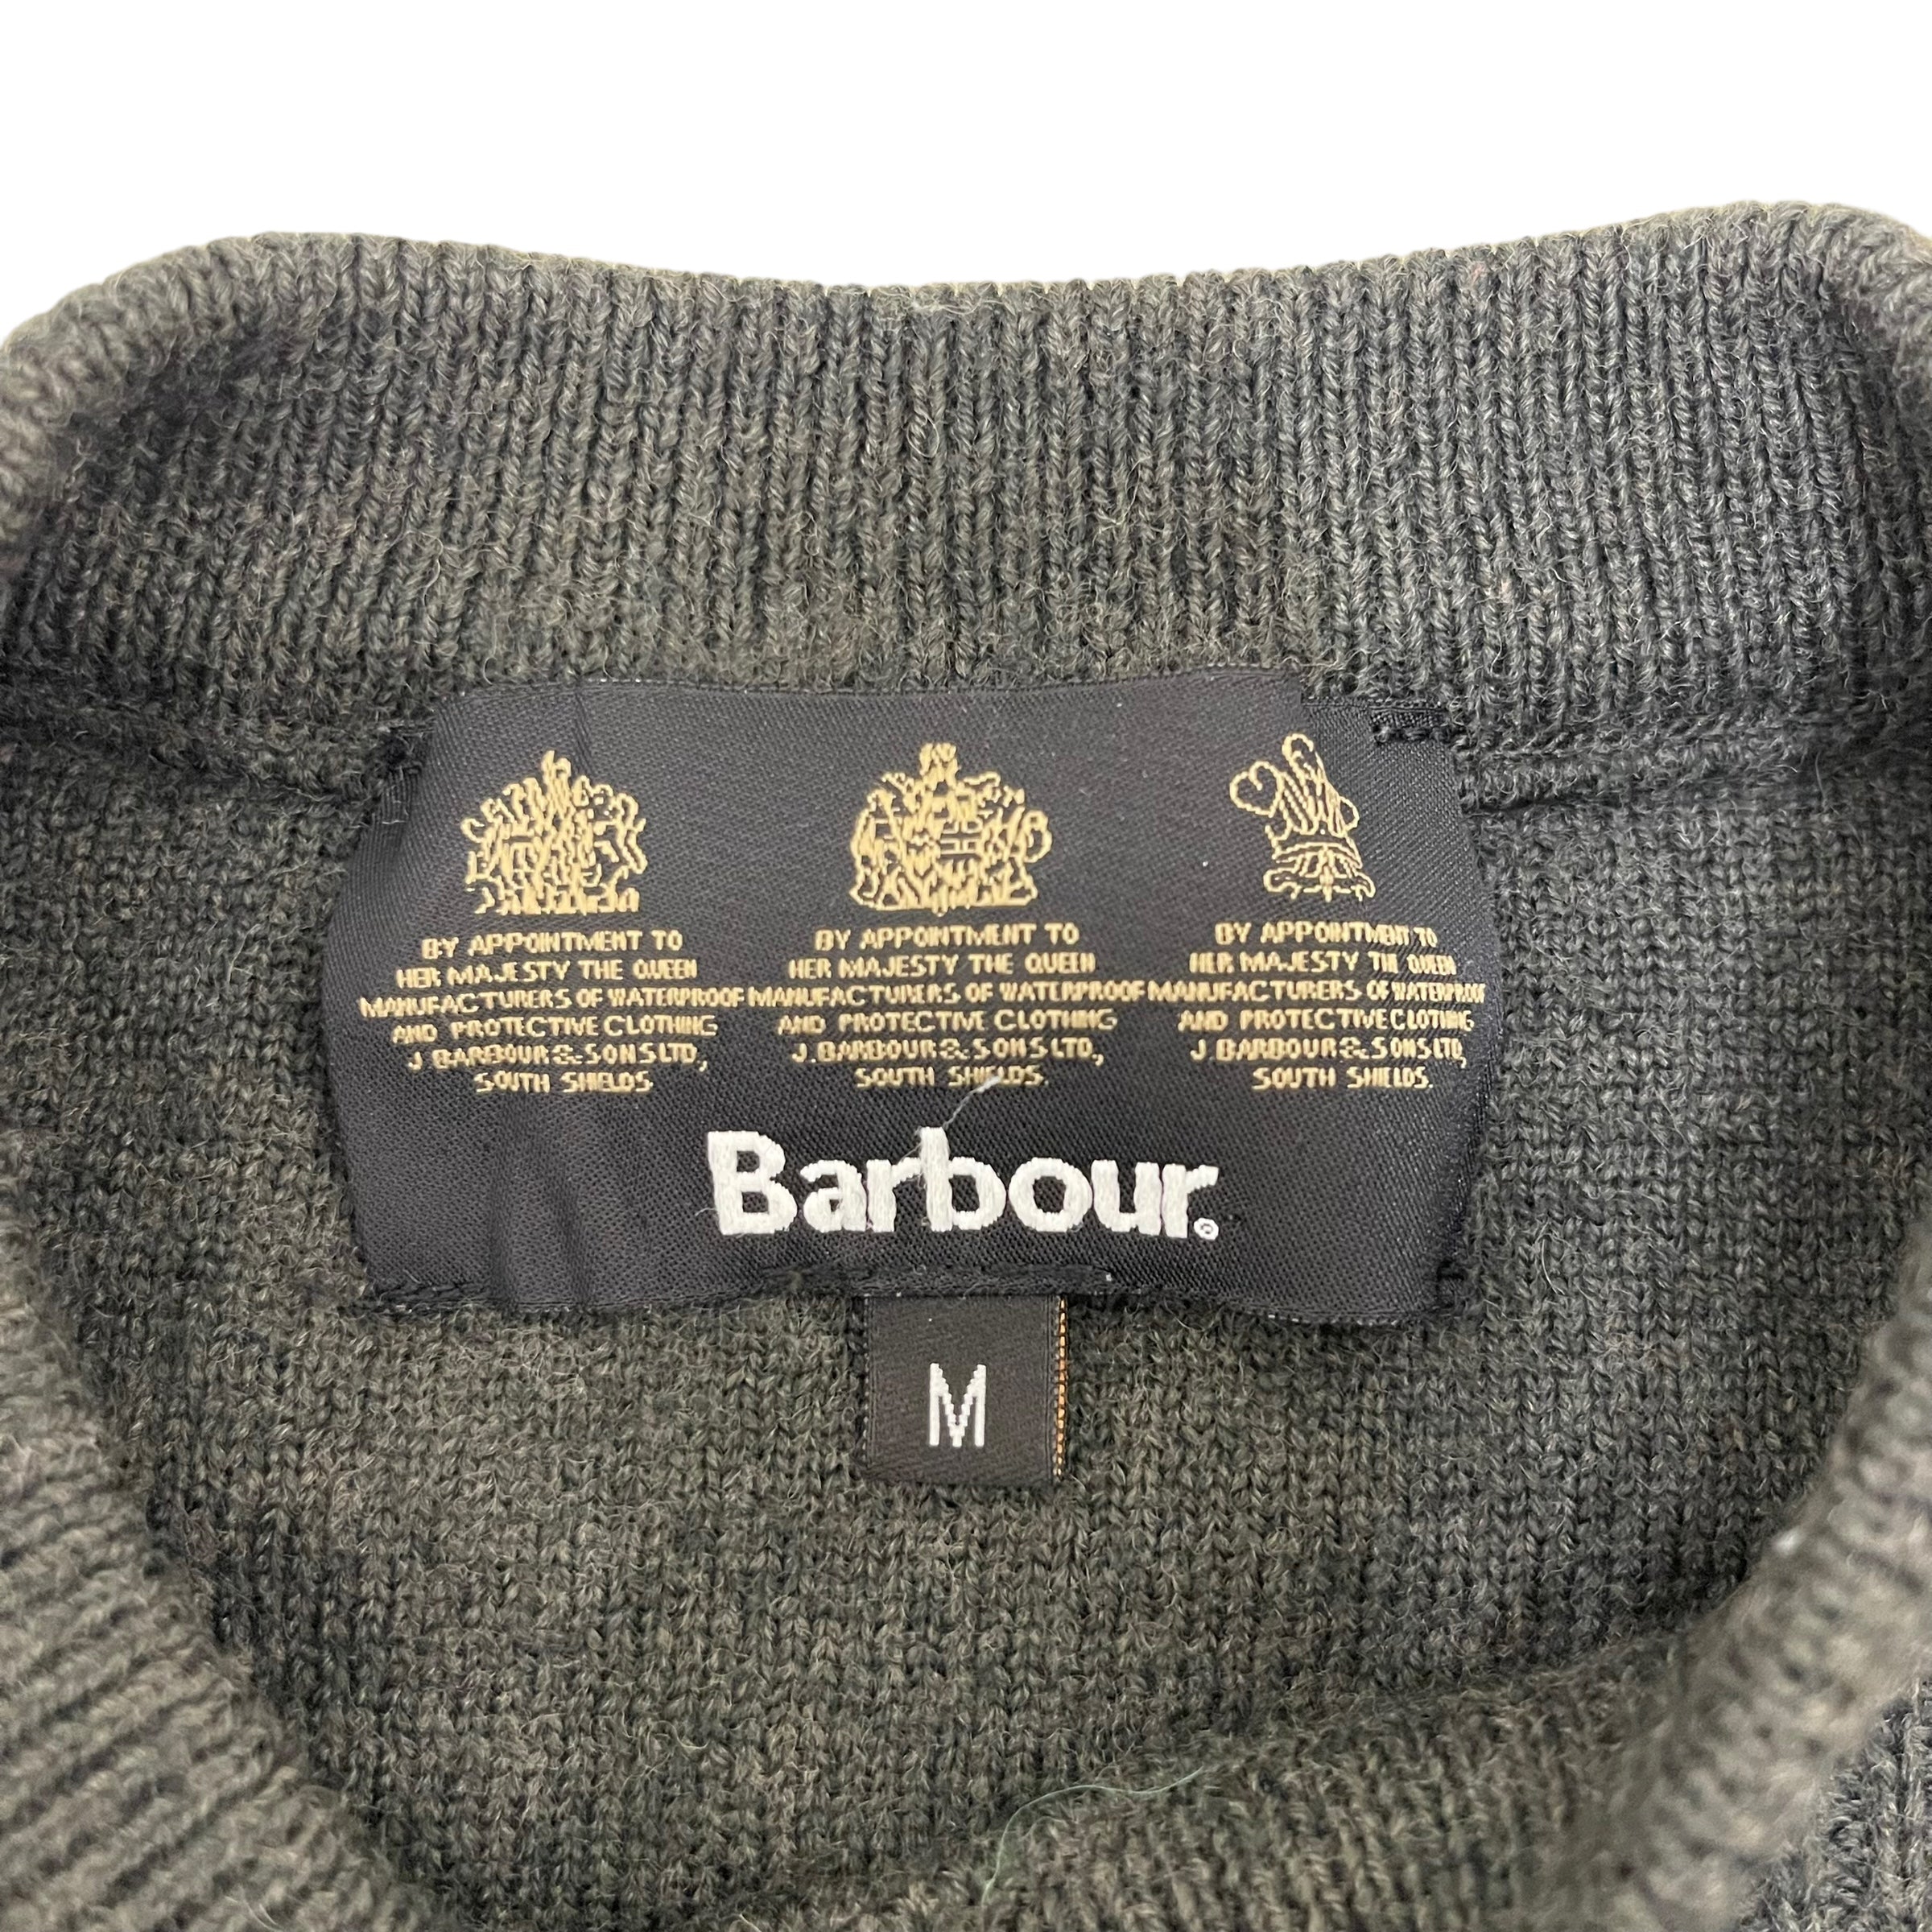 GC175 Barbour ニット セーター プルオーバー エルボーパッチ ブラウン メンズ サイズM